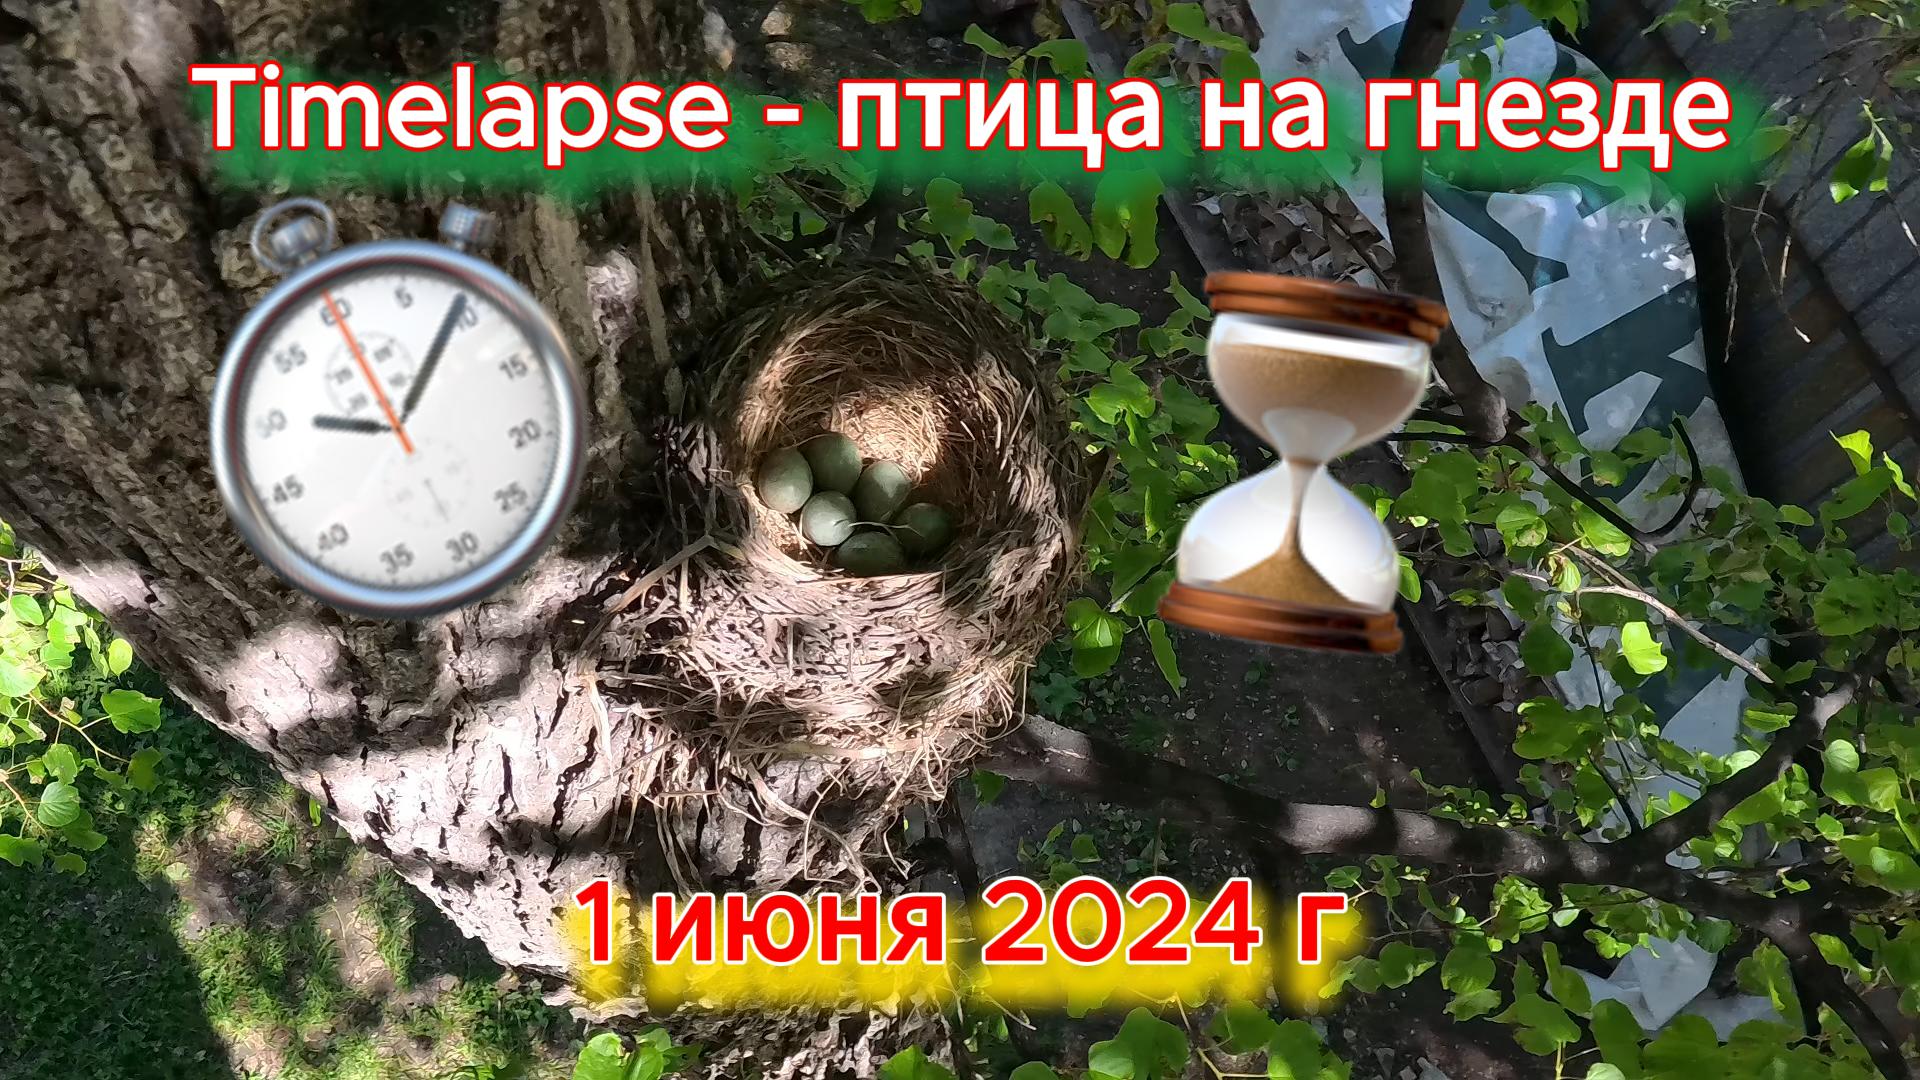 Timelapse Птица на гнезде 1 июня 2024 г